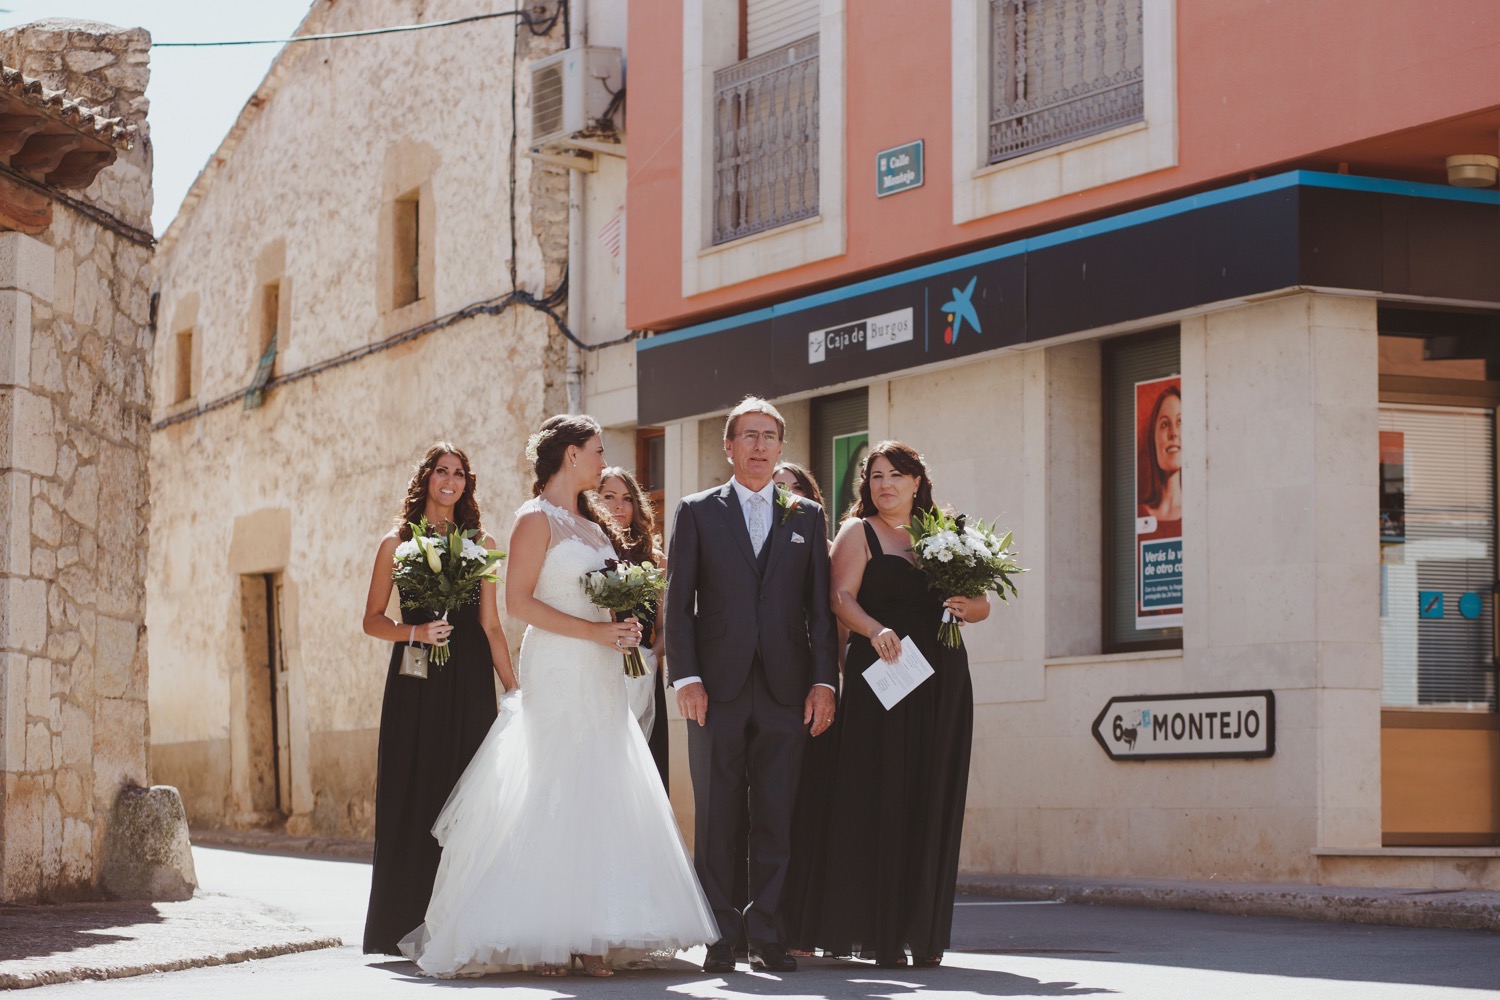 Destination Wedding Photographer in Spain Motiejus-29.jpg